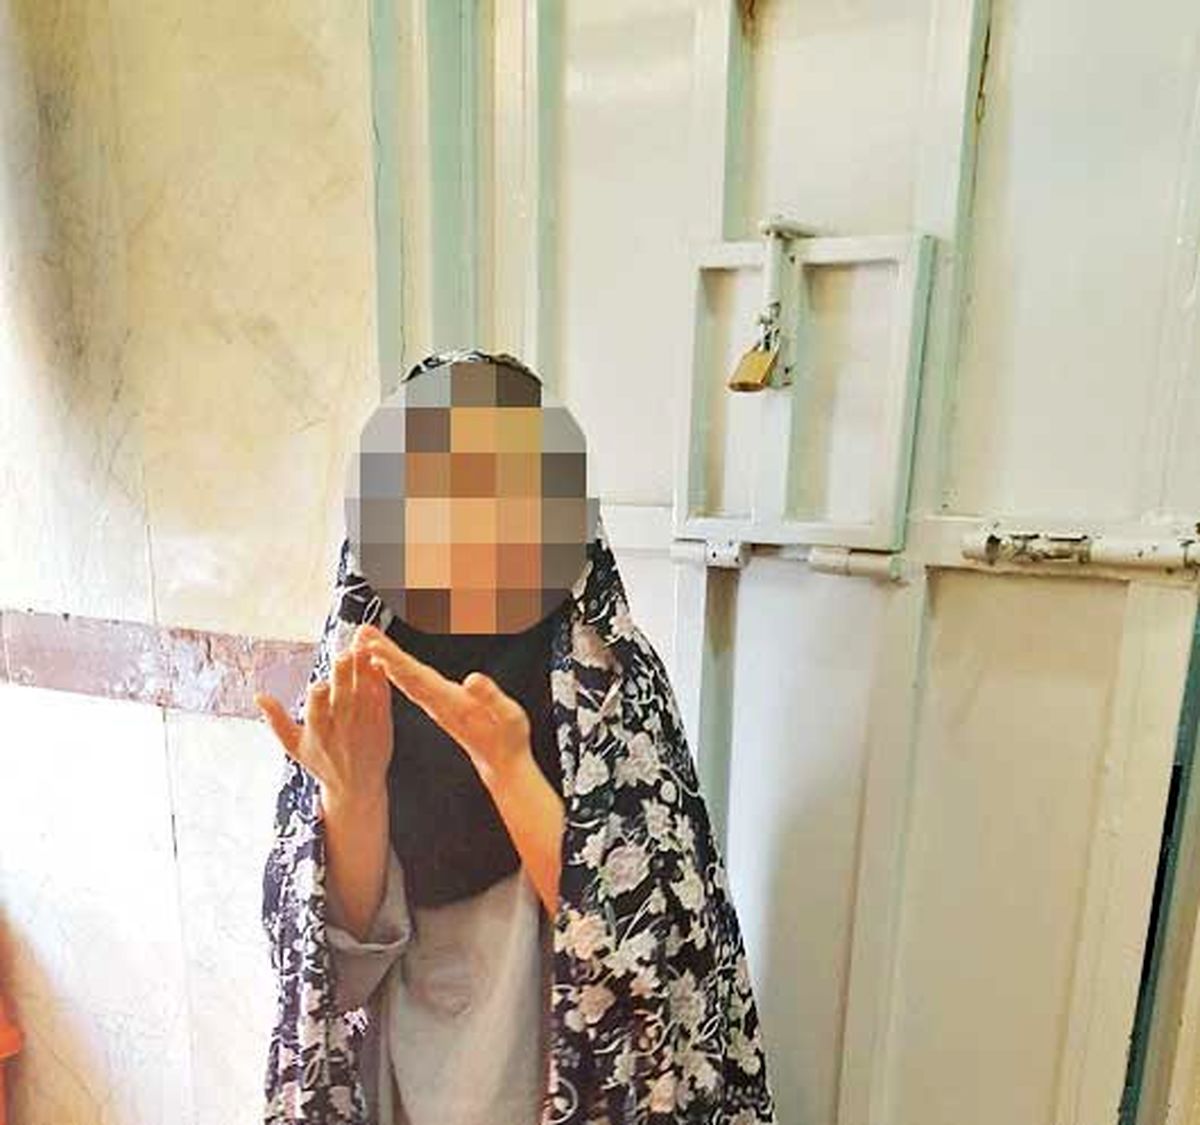 عاقبت شوم ازدواج دختر 17 ساله با مرد قاچاقچی